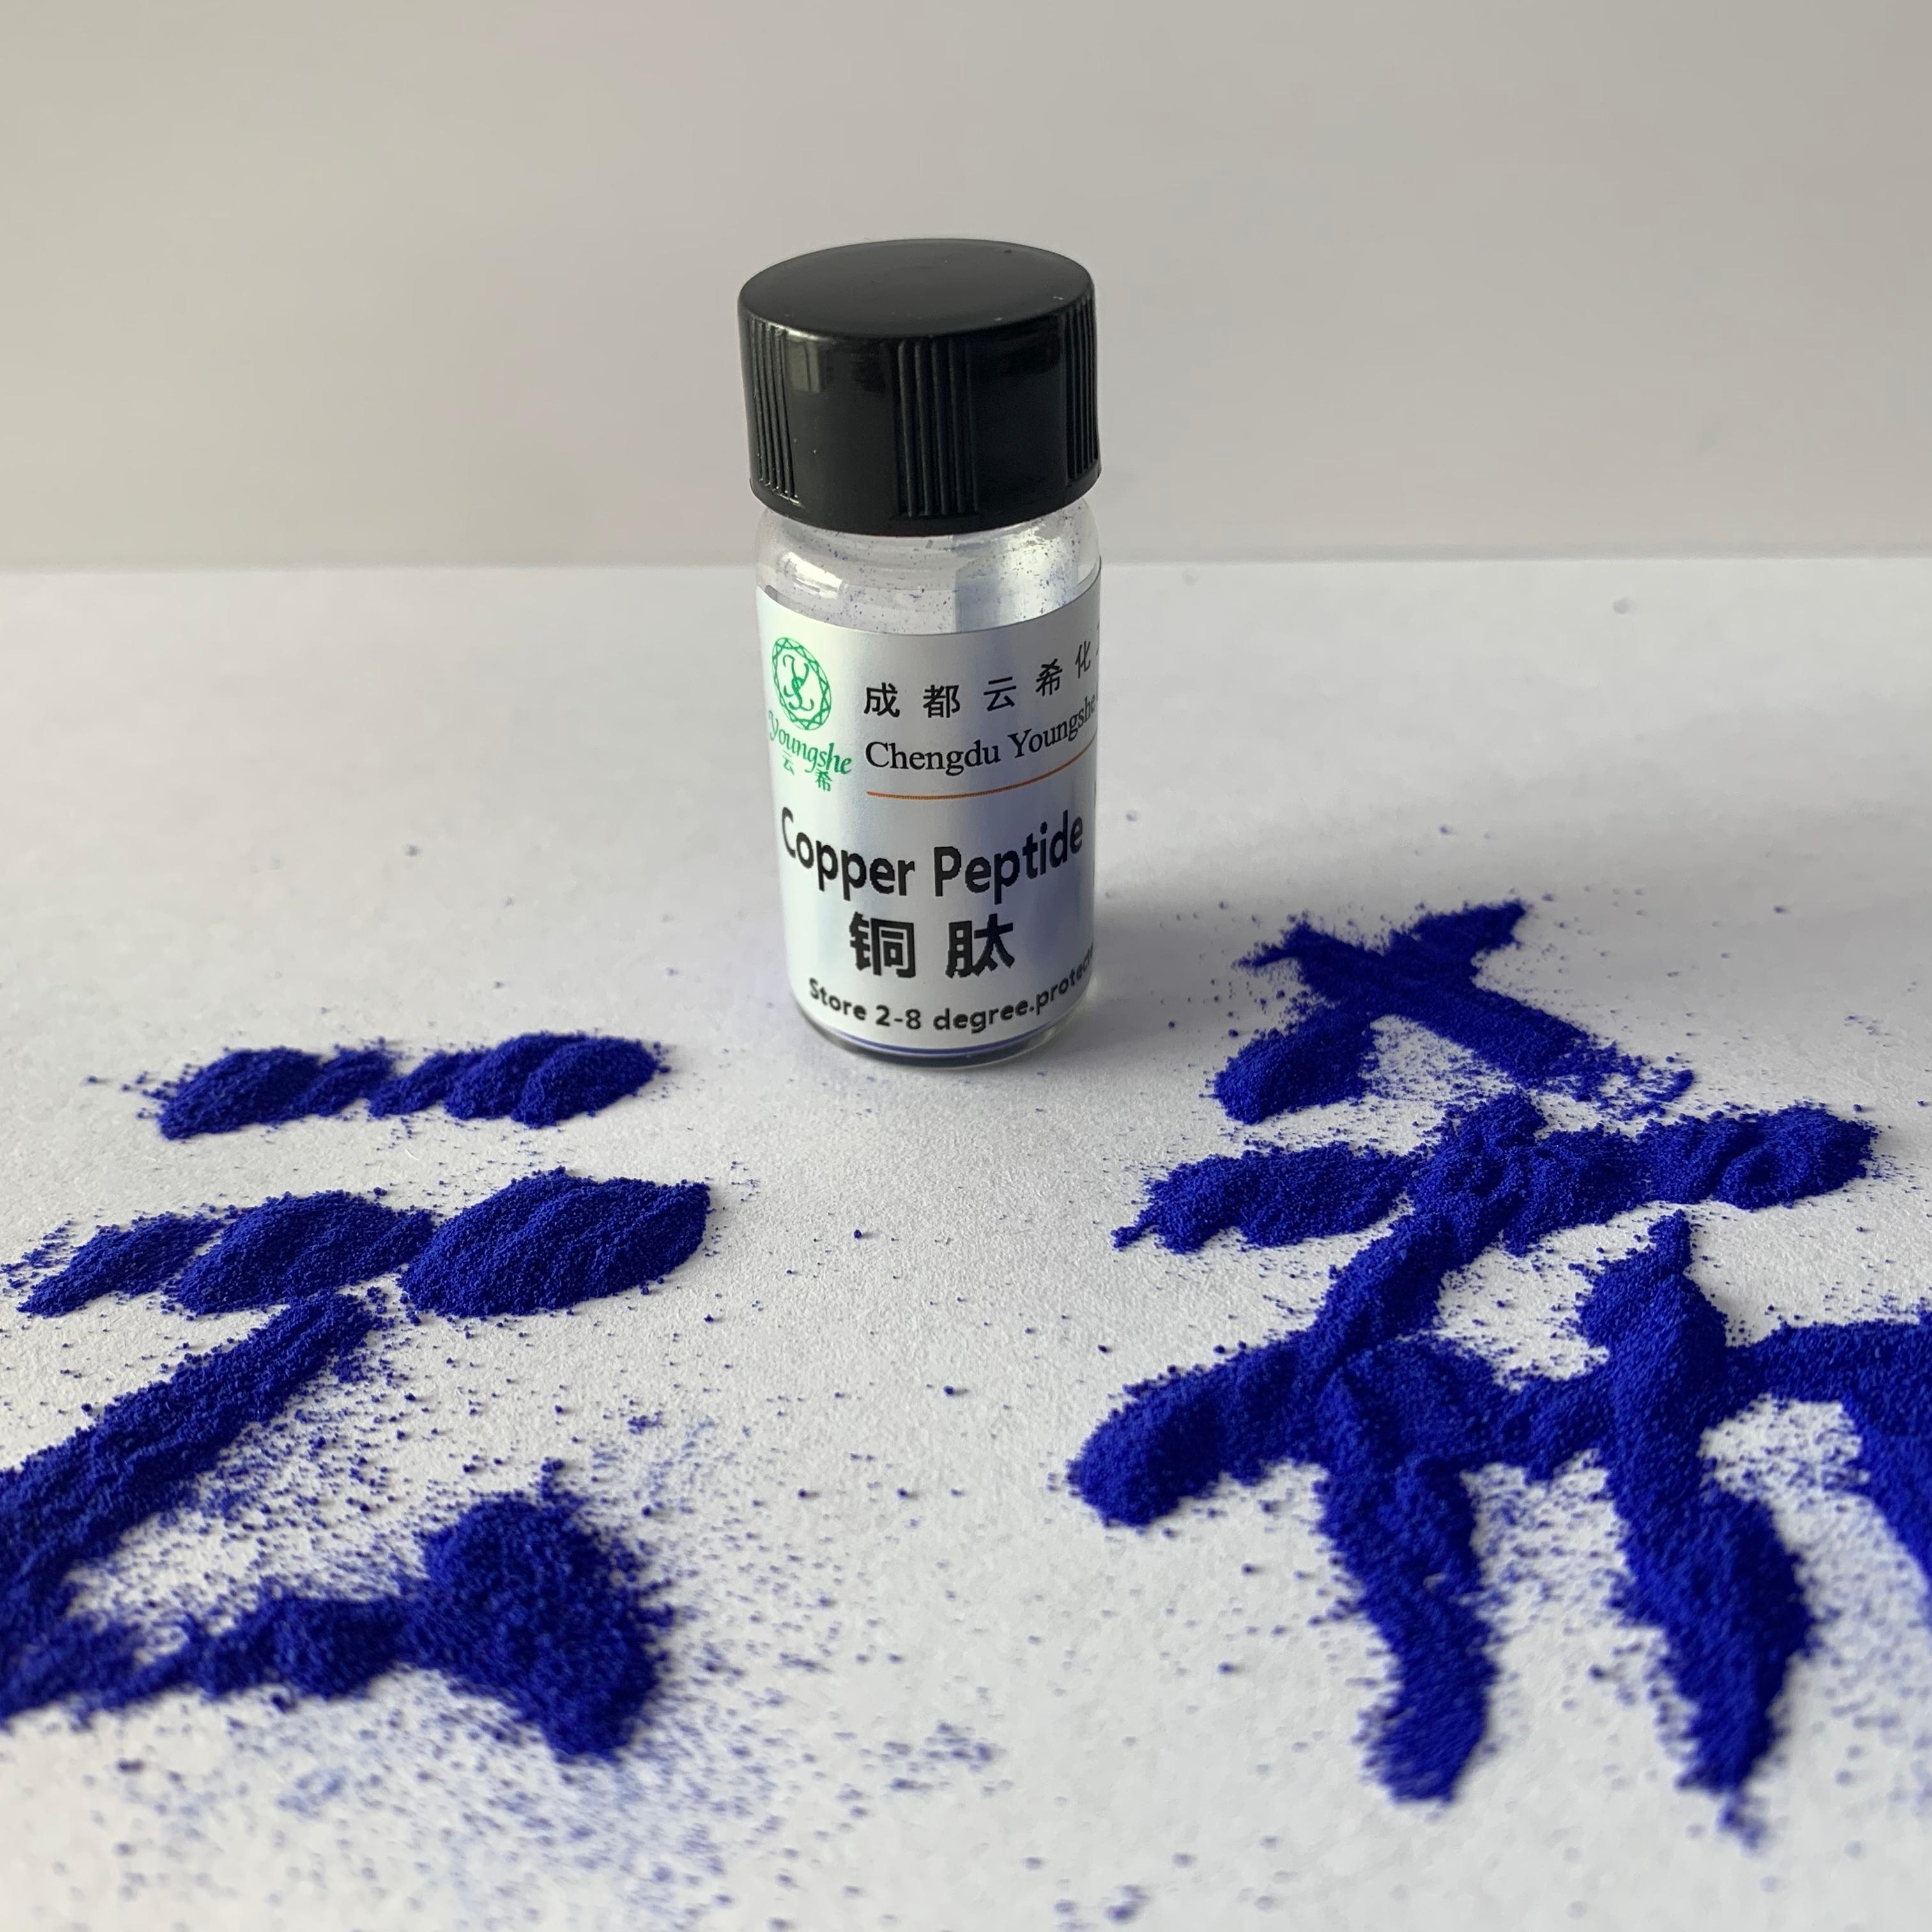 铜肽 蓝铜肽 蓝铜胜肽 三肽-1铜 GHK-Cu